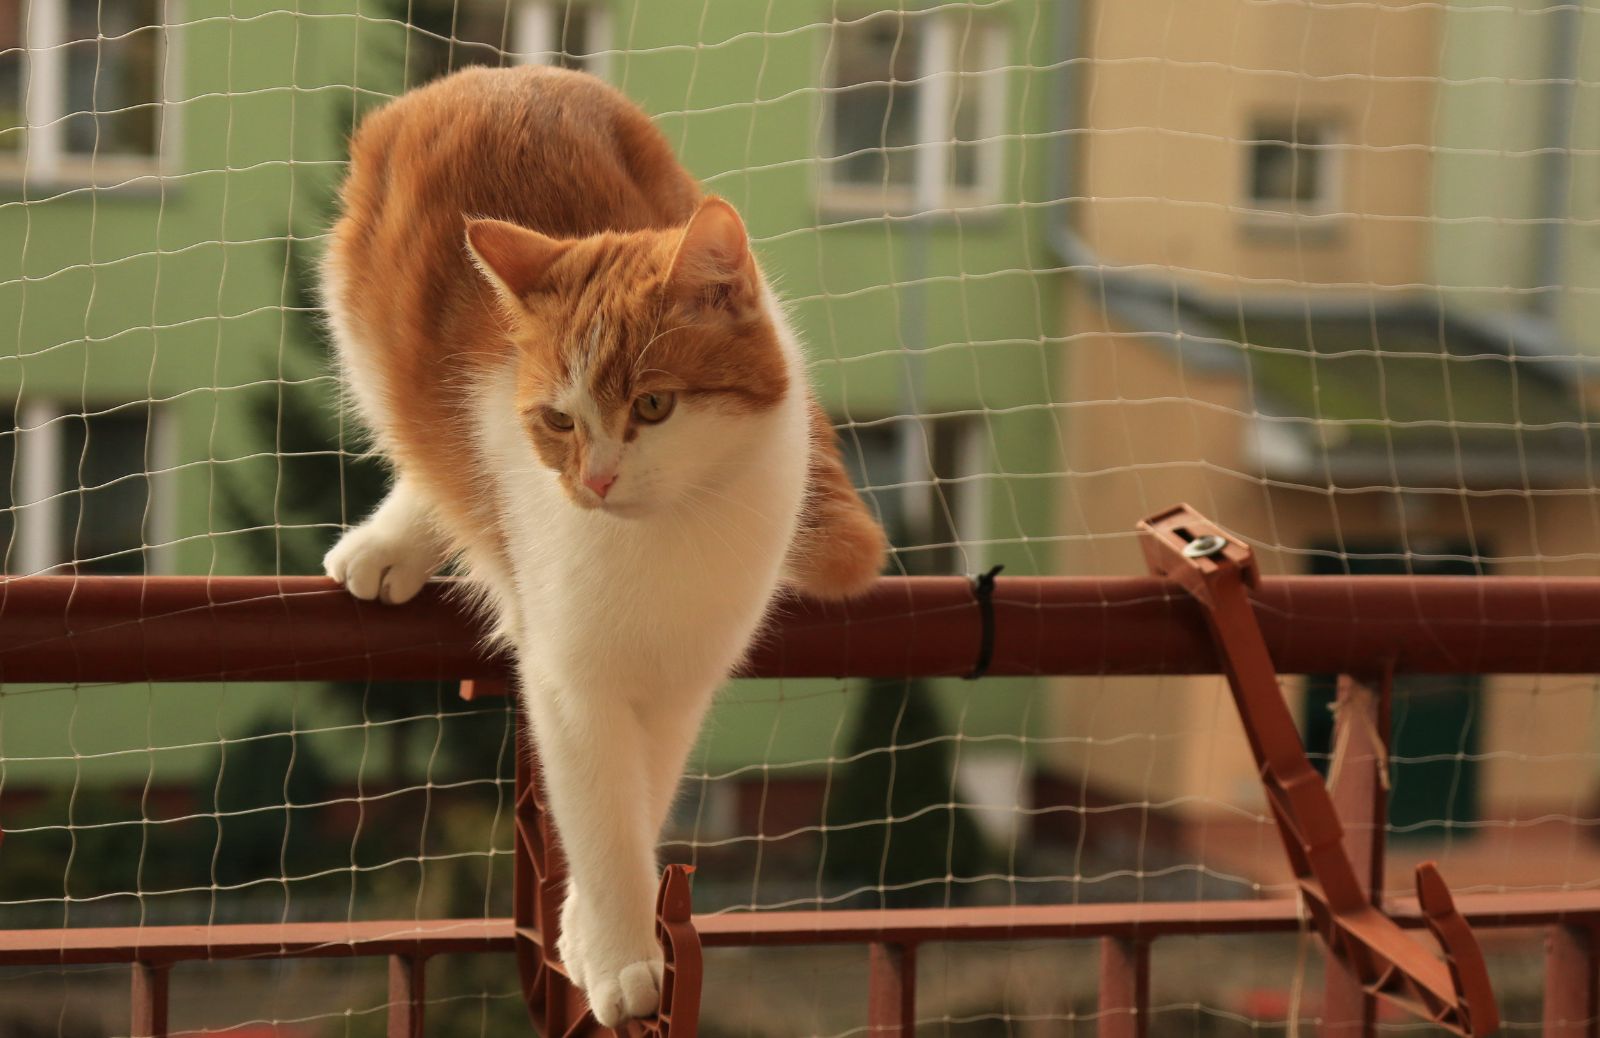 Balconi in sicurezza per gatti: i consigli pratici